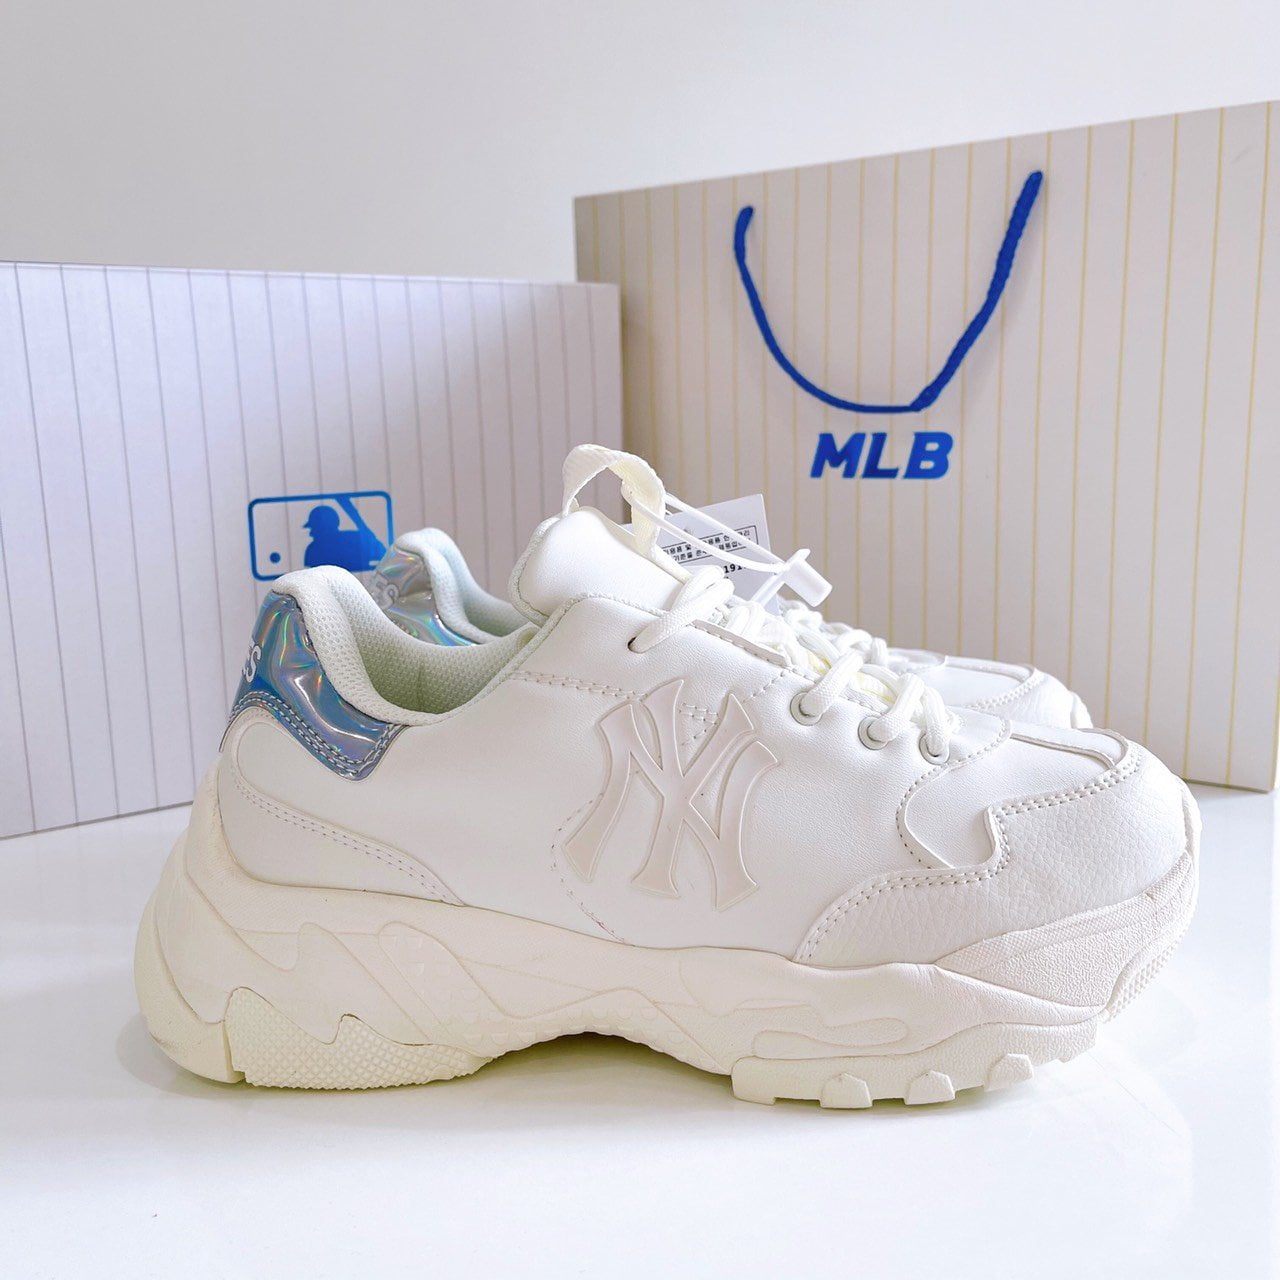 MLB Korea LowTop Sneakers Màu Trắng Logo NYGót Hologram Vàng  Zippy Store